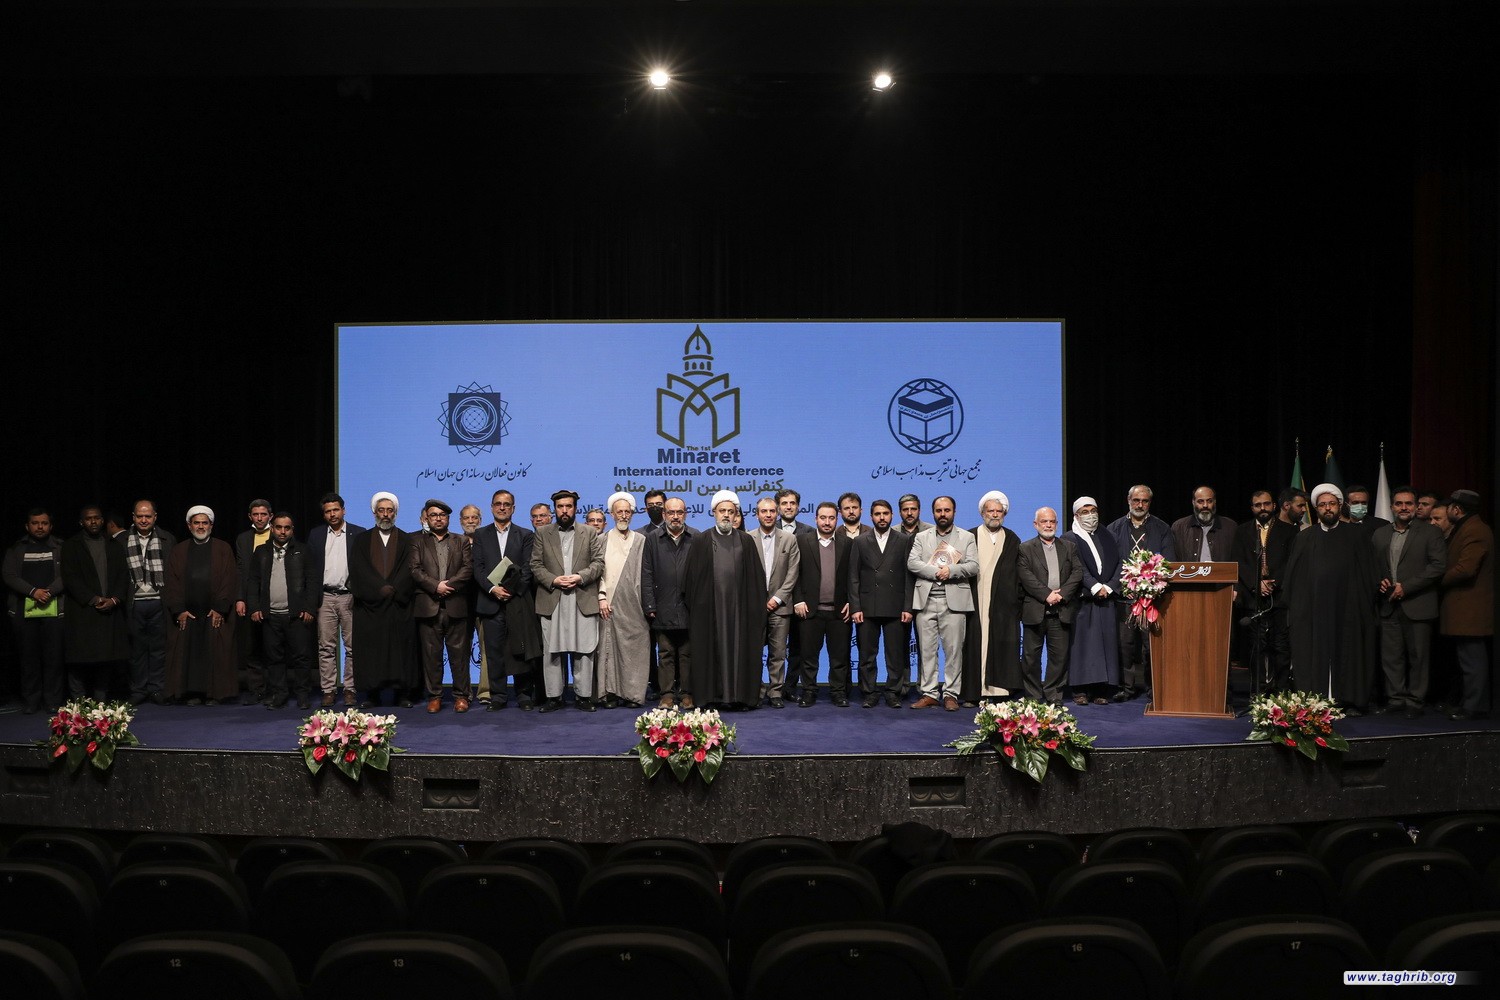 المشاركون في مؤتمر وسائل الاعلام ووحدة الامة يدينون بشدة الاساءة الى المقدسات الاسلامية